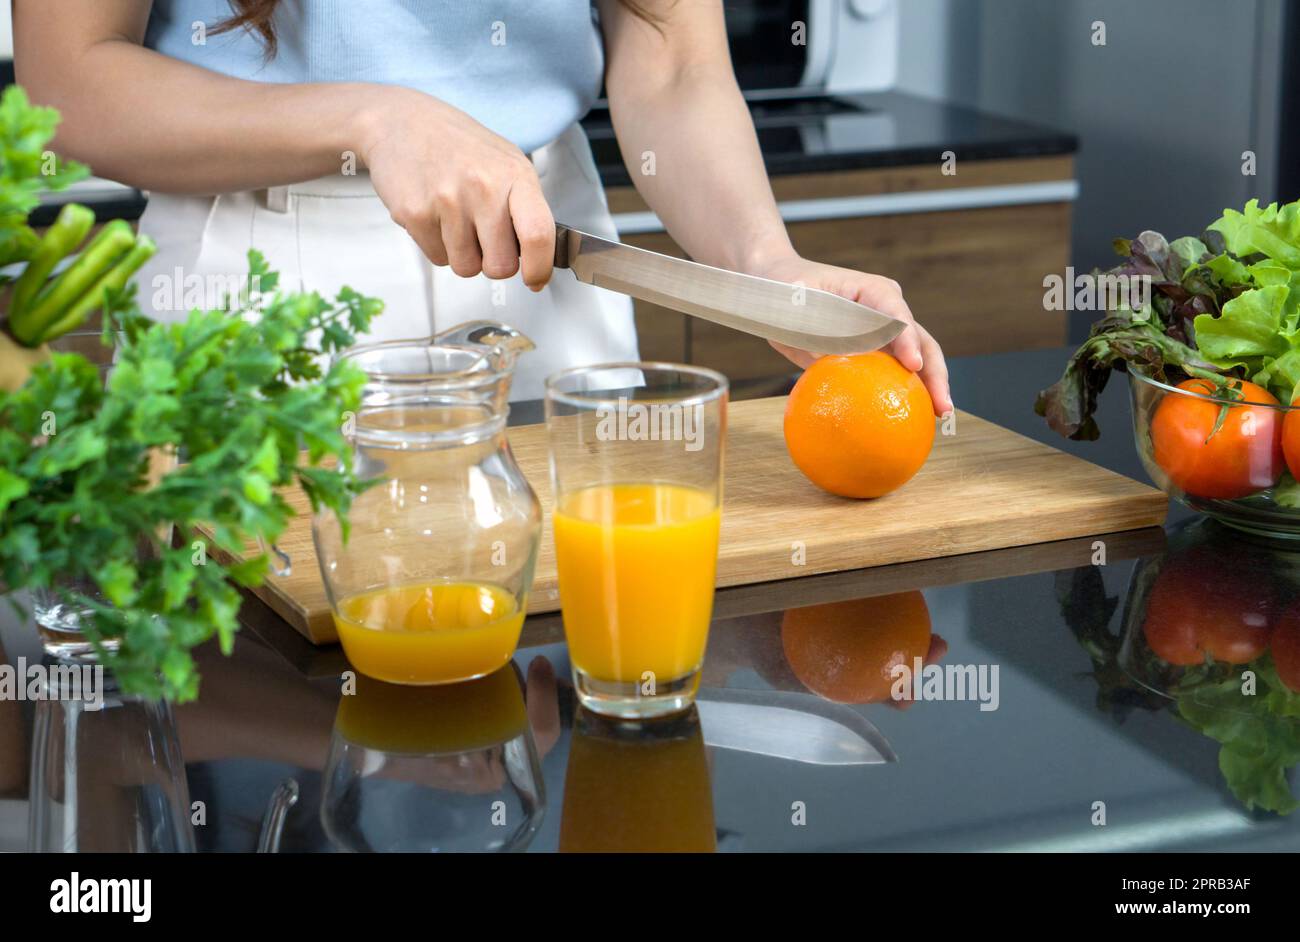 Gros plan main tenant le couteau coupant des fruits orange sur une planche à découper en bois. Un bol contenant un mélange de jus de fruits et un bol en verre contenant une variété de fruits et légumes est placé sur le comptoir de la cuisine. Banque D'Images